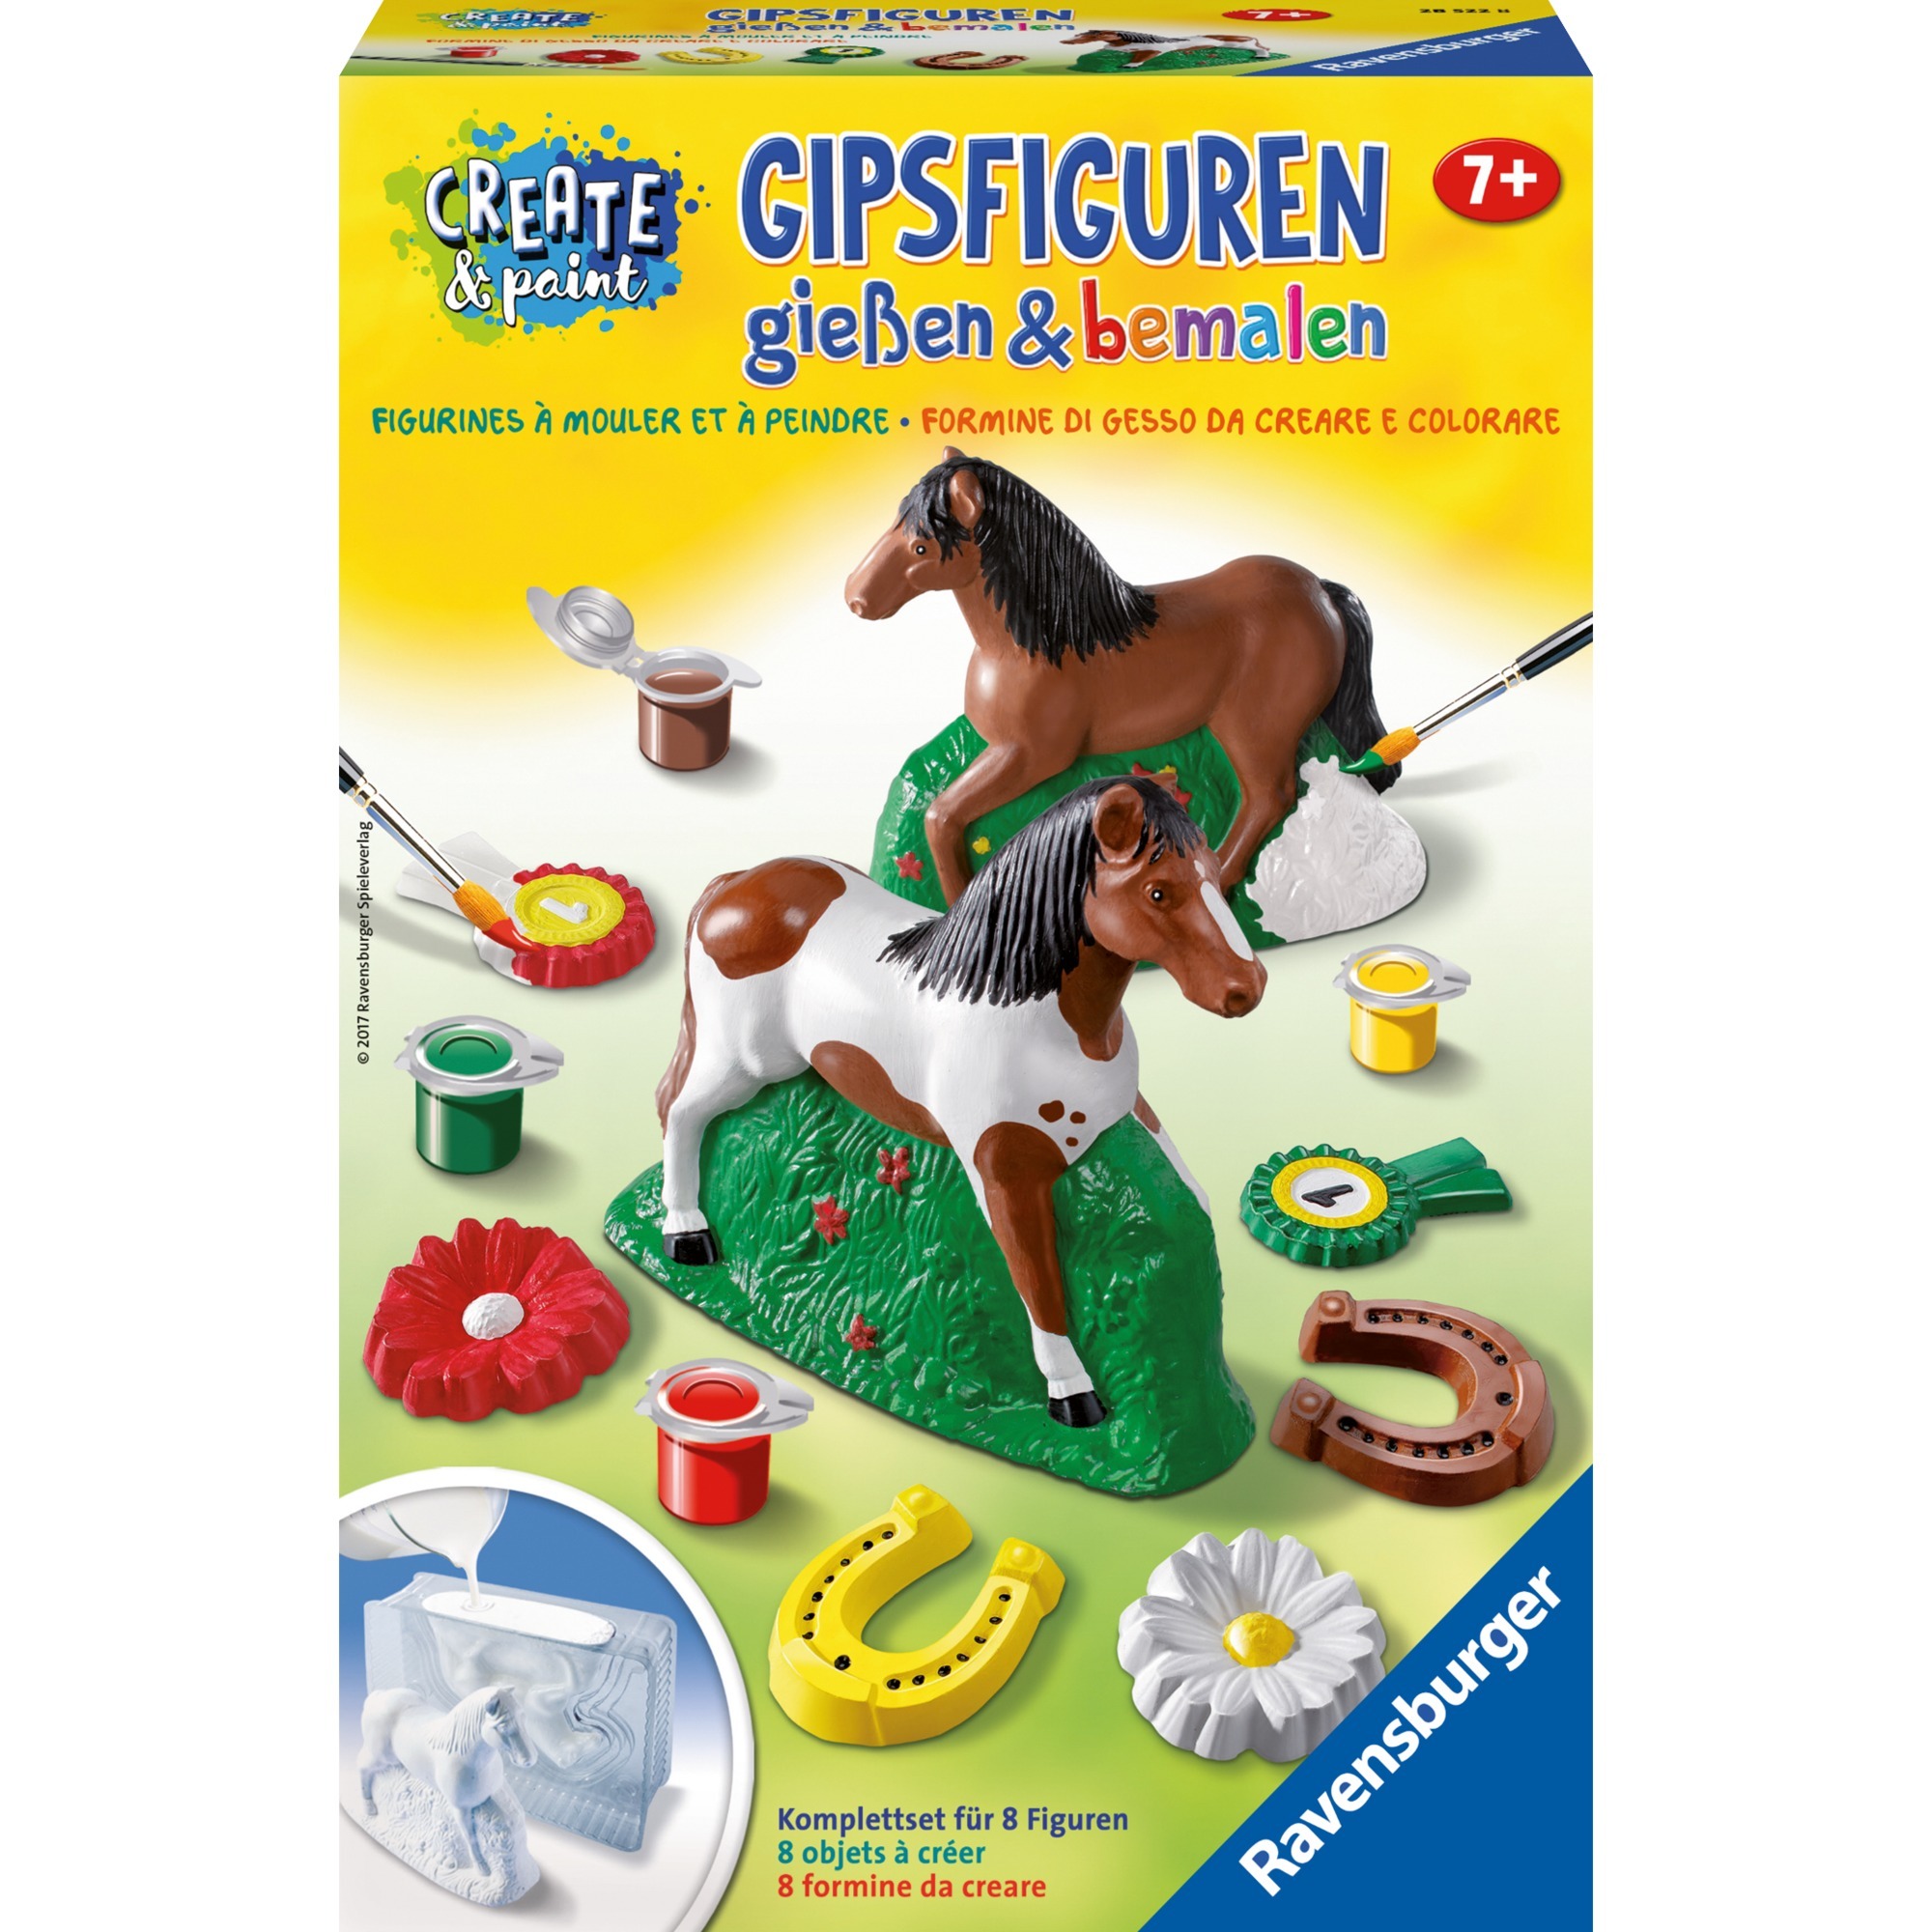 Image of Alternate - Gipsfiguren gießen & bemalen: Pferd, Basteln online einkaufen bei Alternate